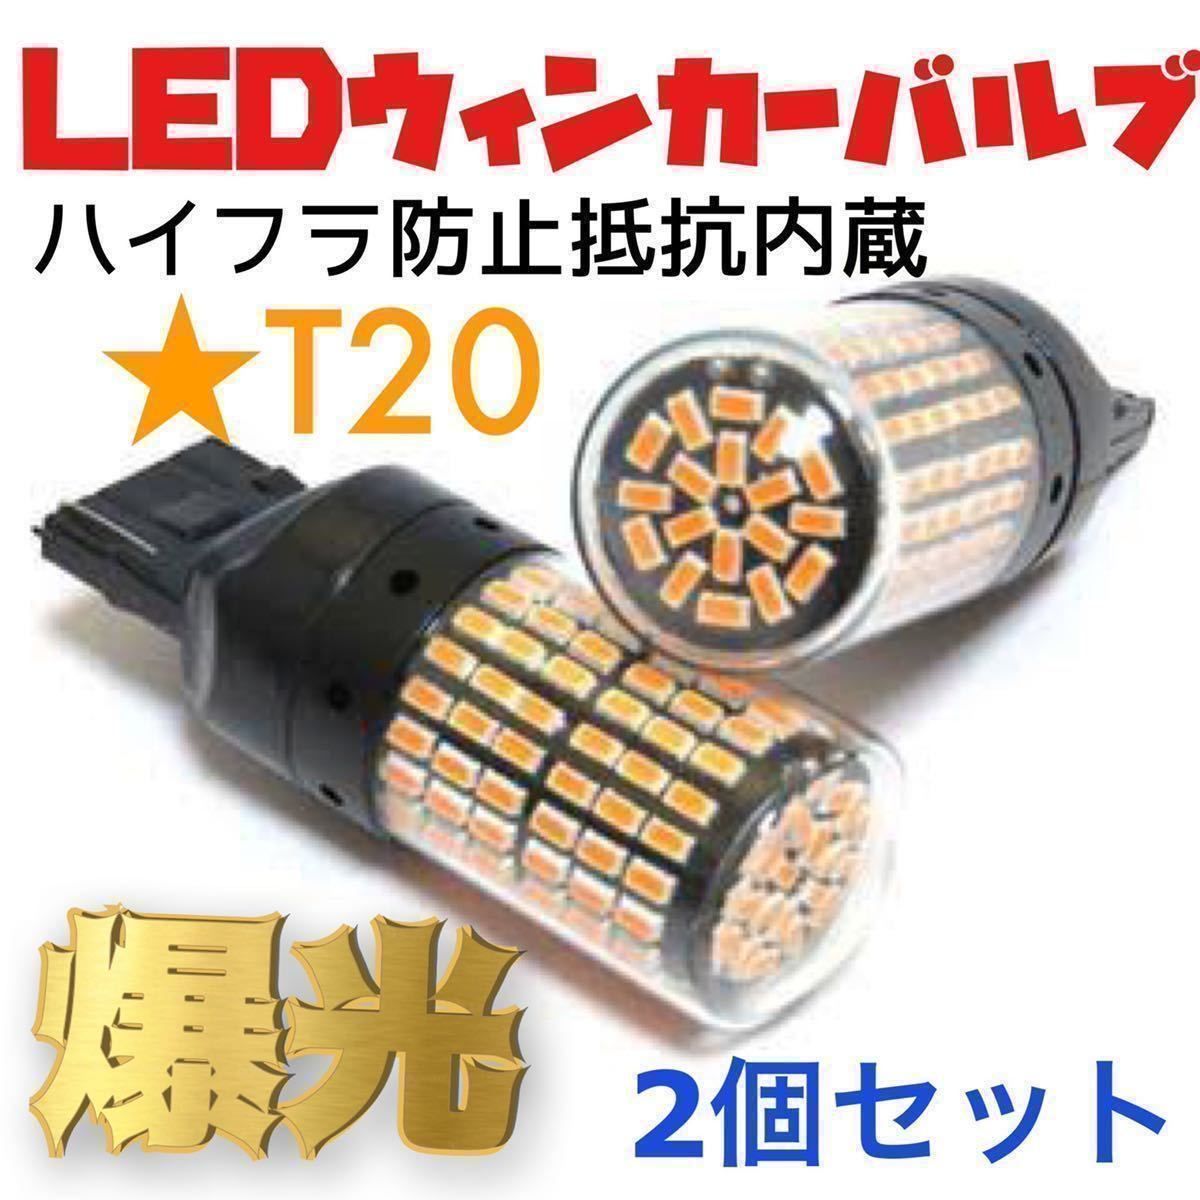 新製品 新品 LED T20 ウインカー オレンジ色 ハイフラ防止抵抗内蔵 ピンチ部違い対応 2個セット アンバー 12v LEDバルブ _画像1